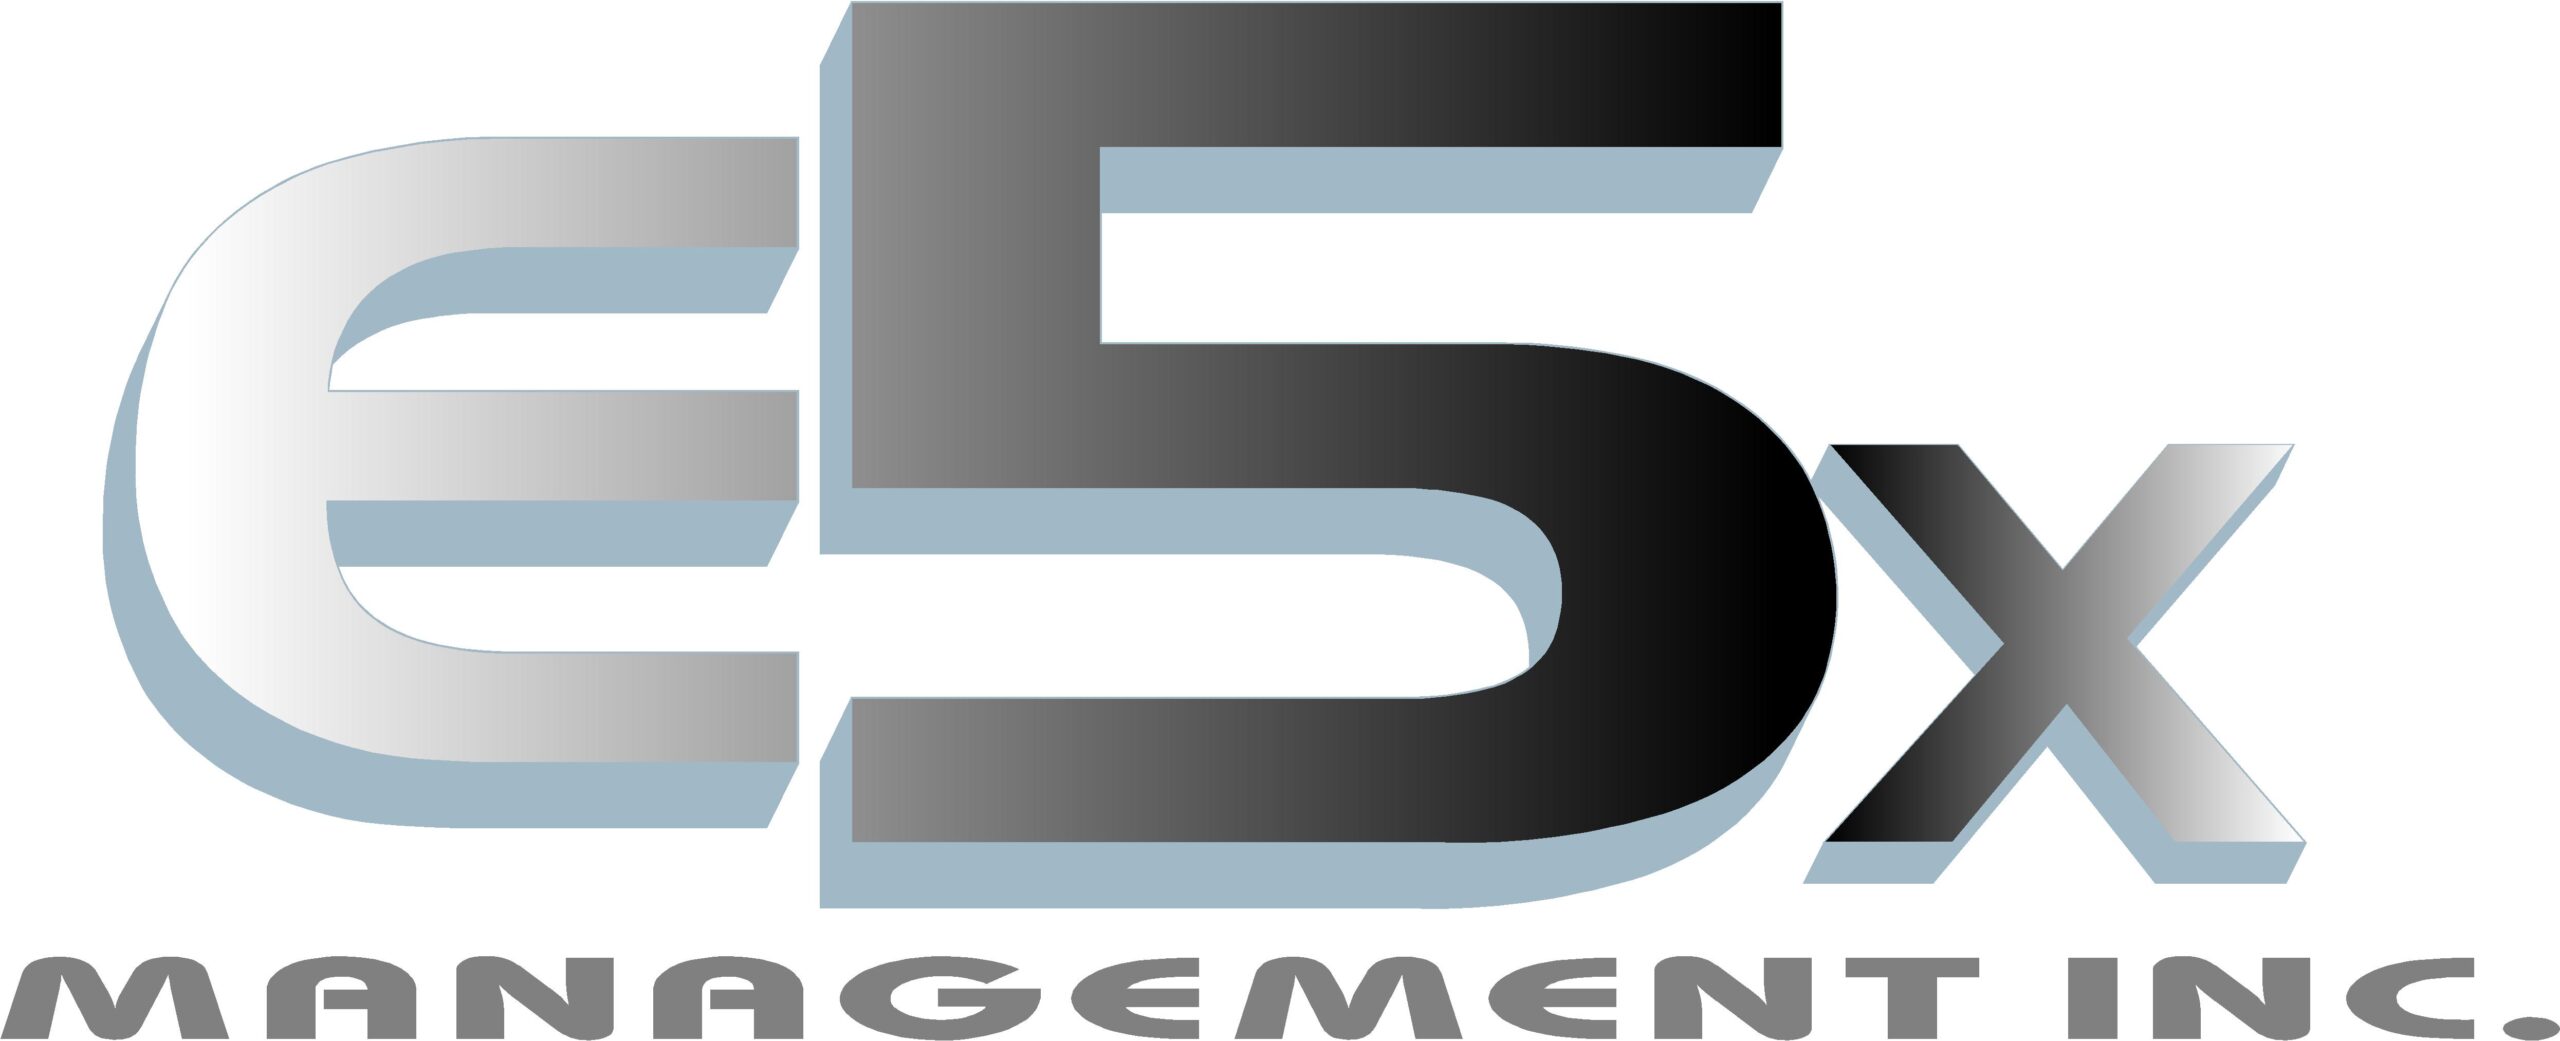 E5X Management Inc. logo